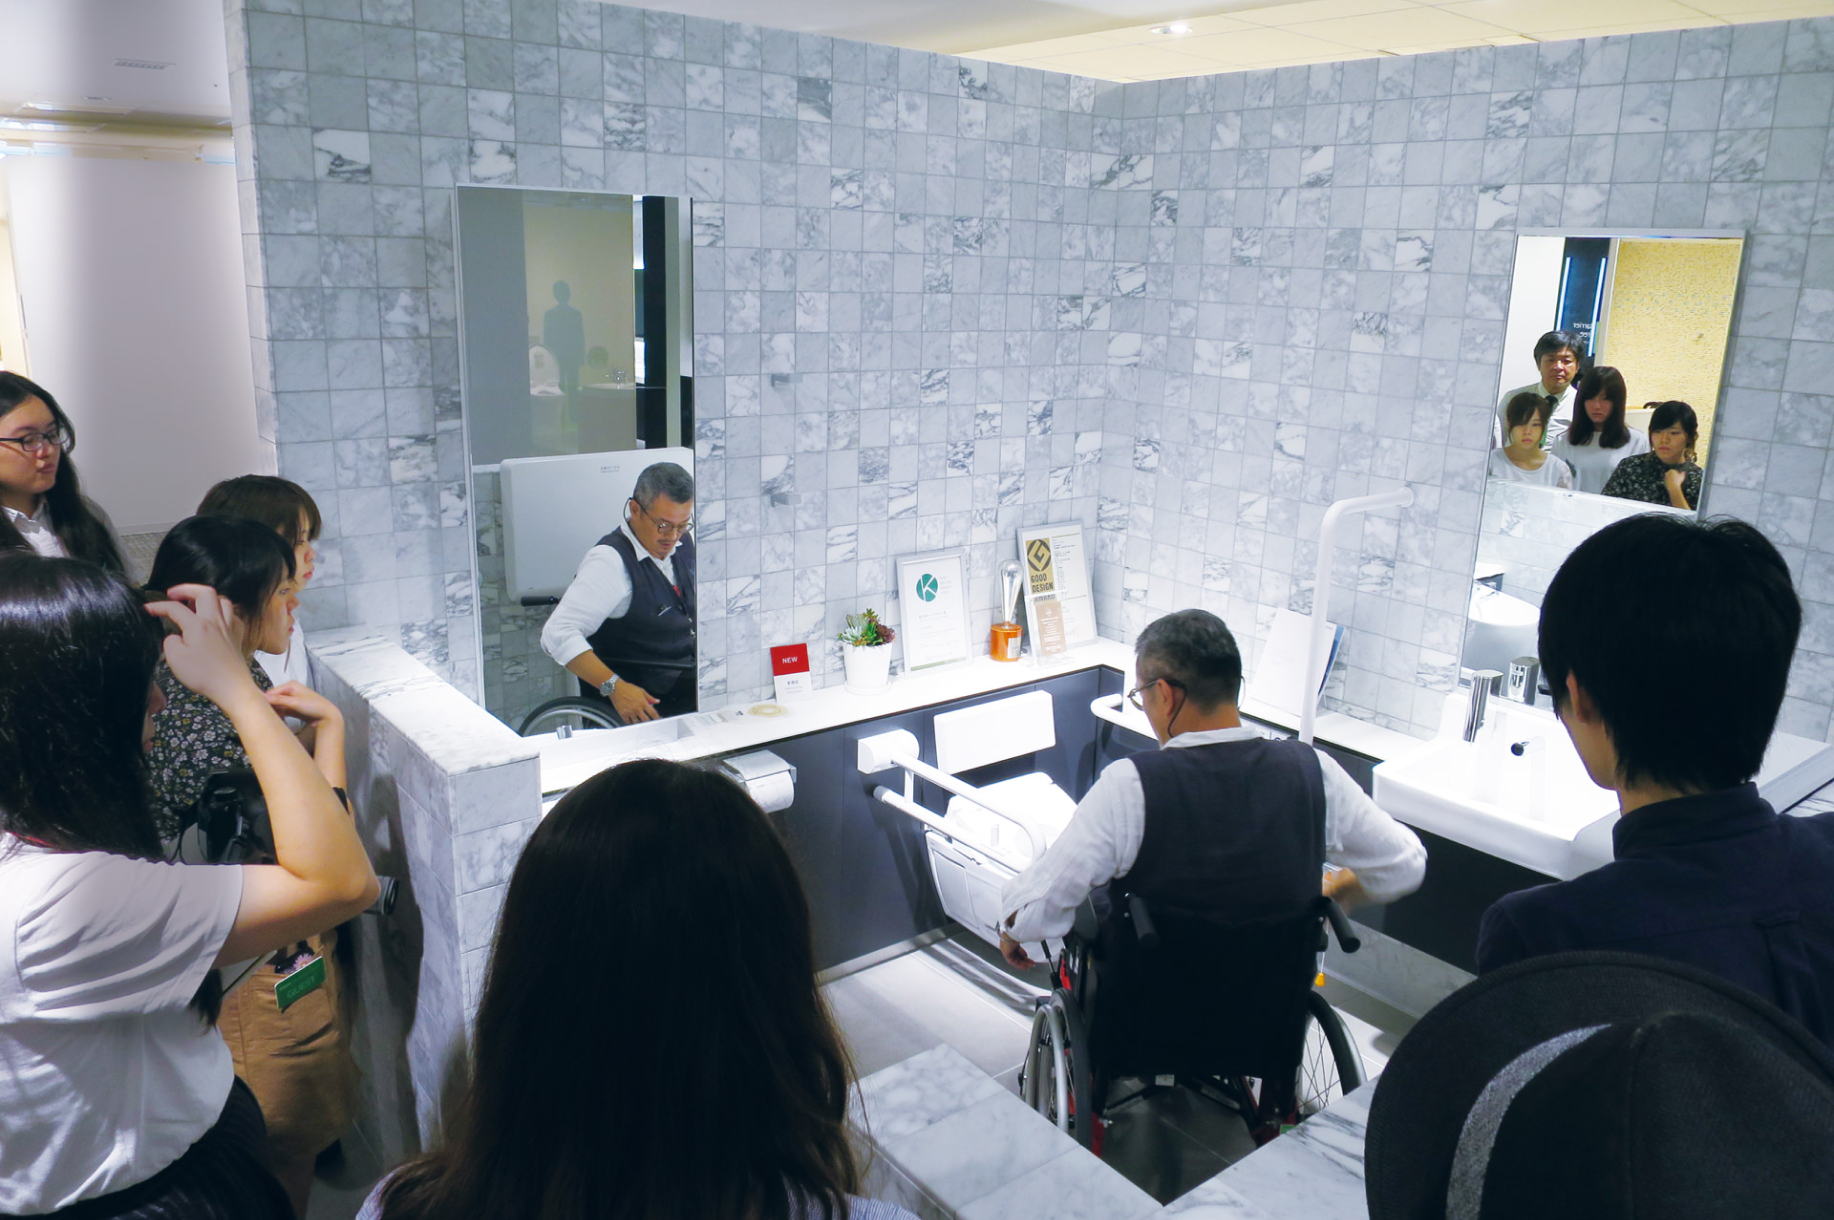 洗面所で車椅子を使用する人向けの設備を紹介している展示会の様子。壁と洗面台はタイル調で、鏡には参加者の姿が映っている。